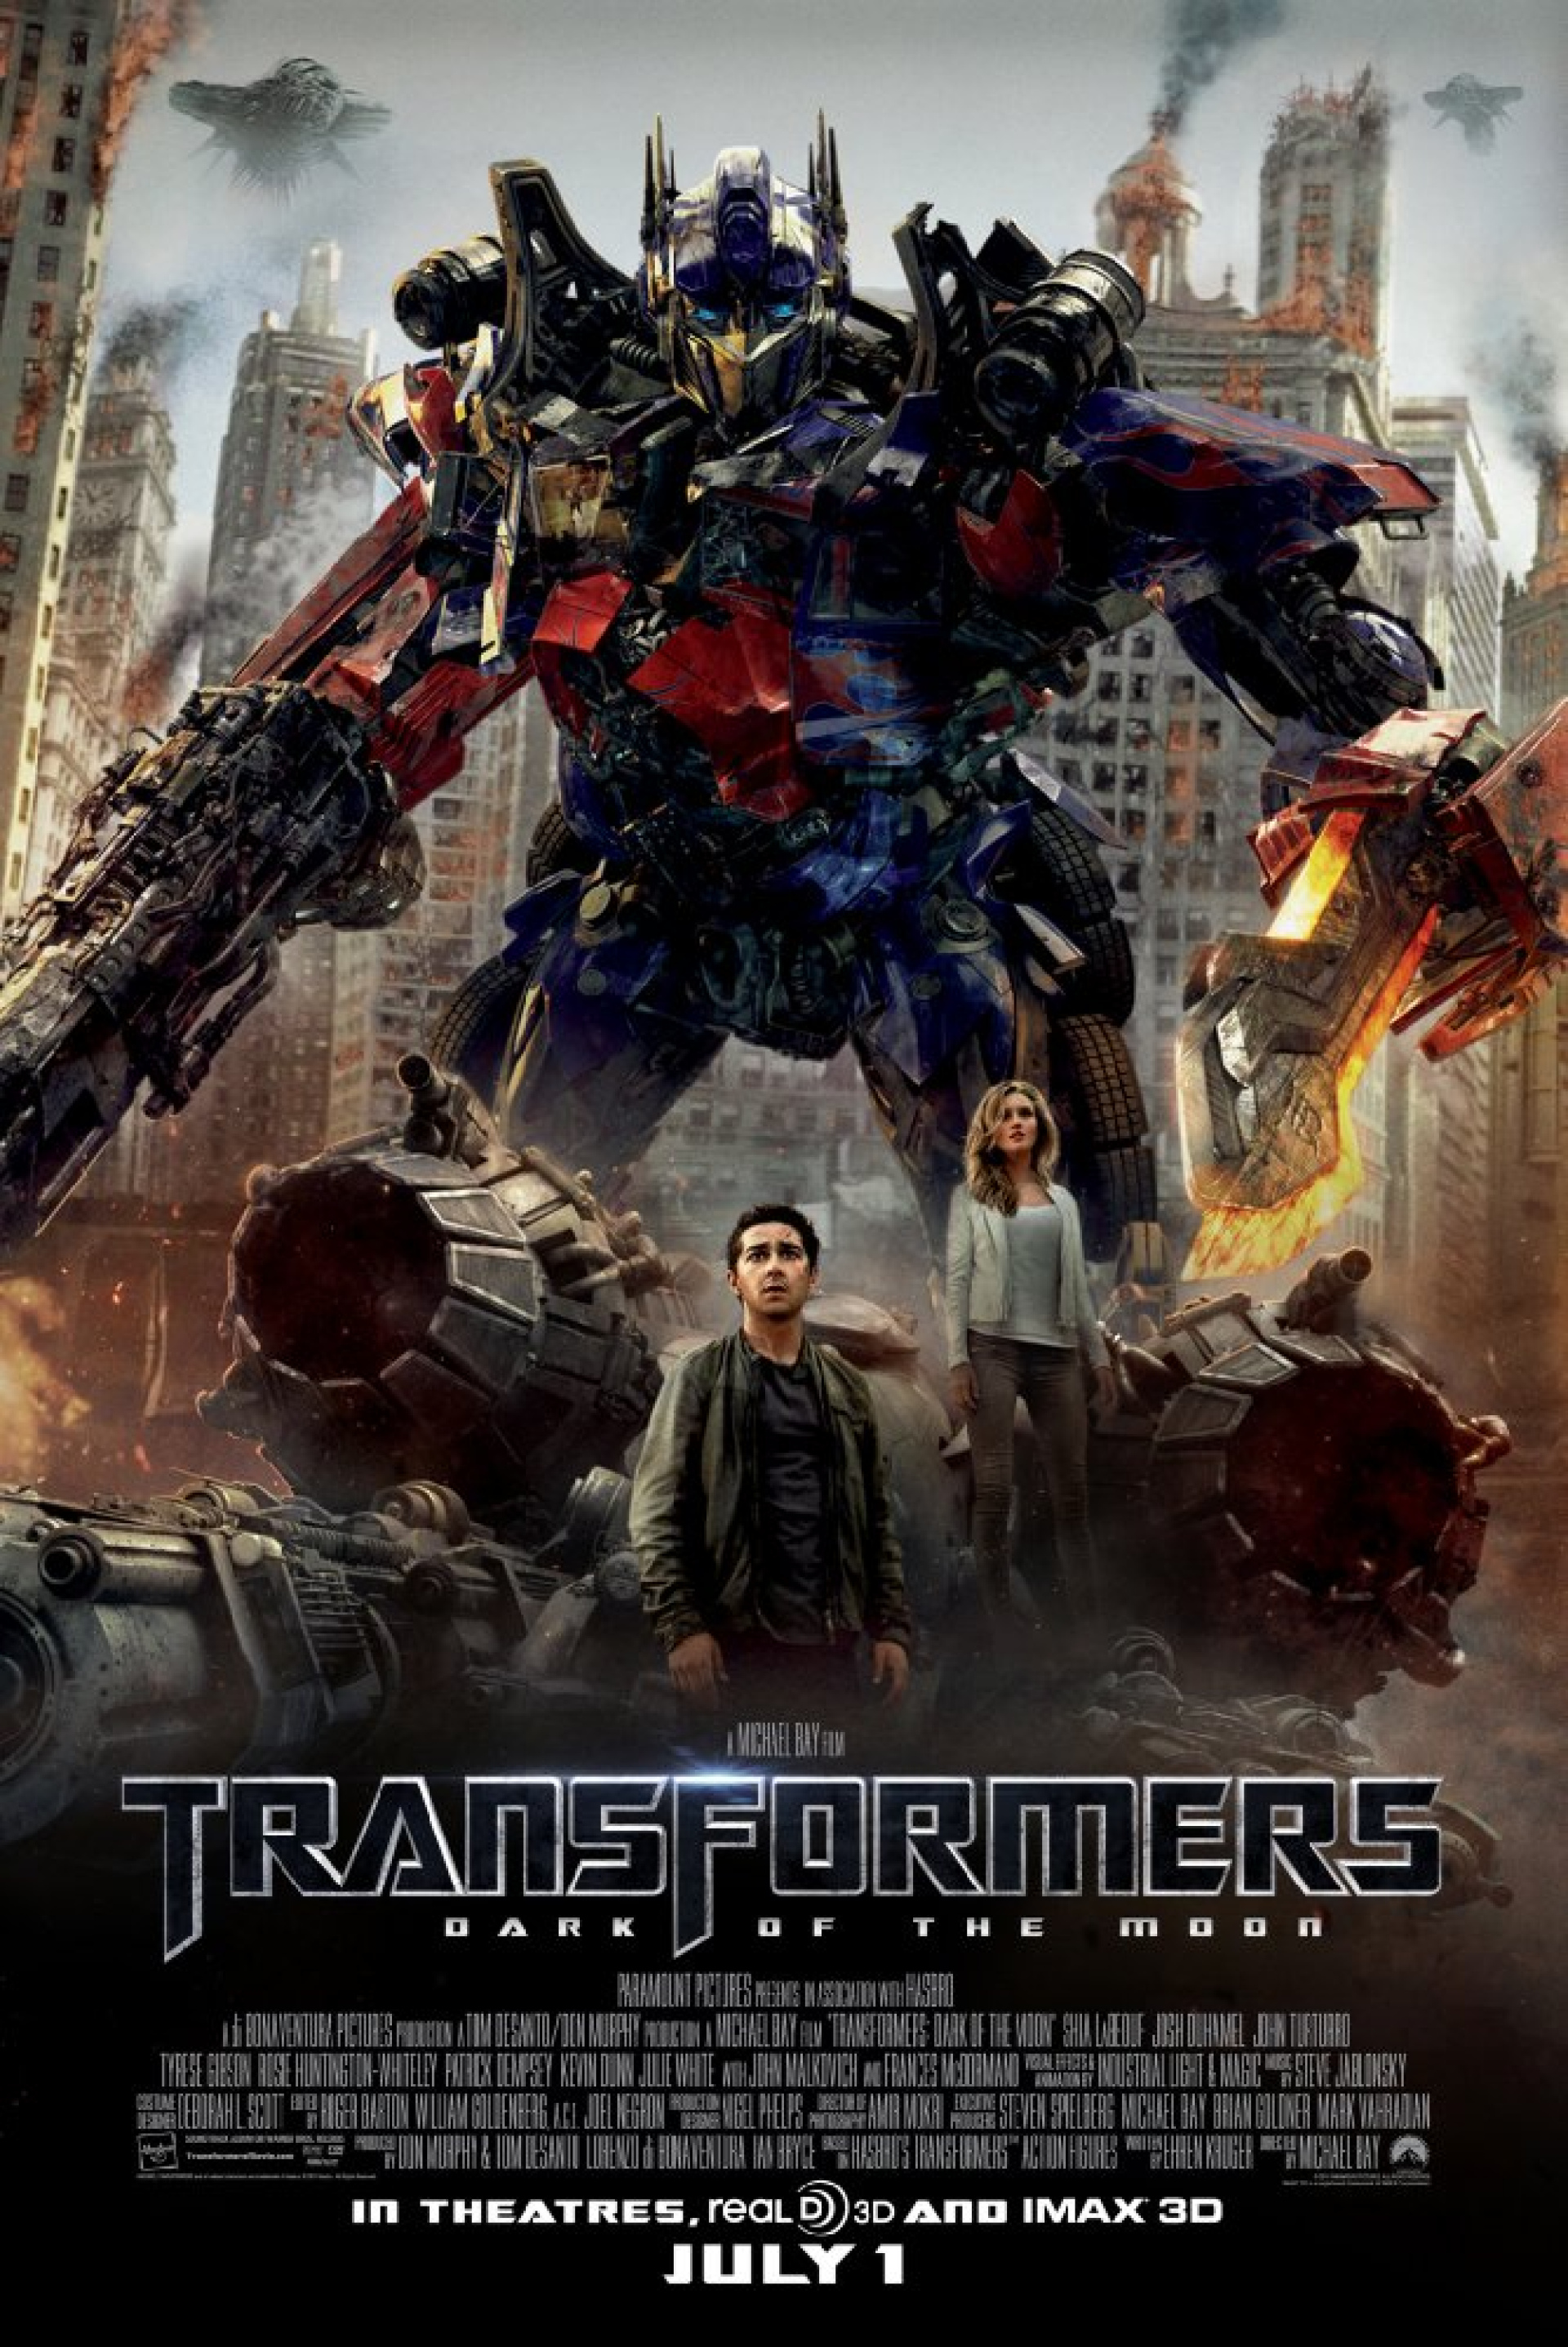 Abbildung: Poster - Transformers 3